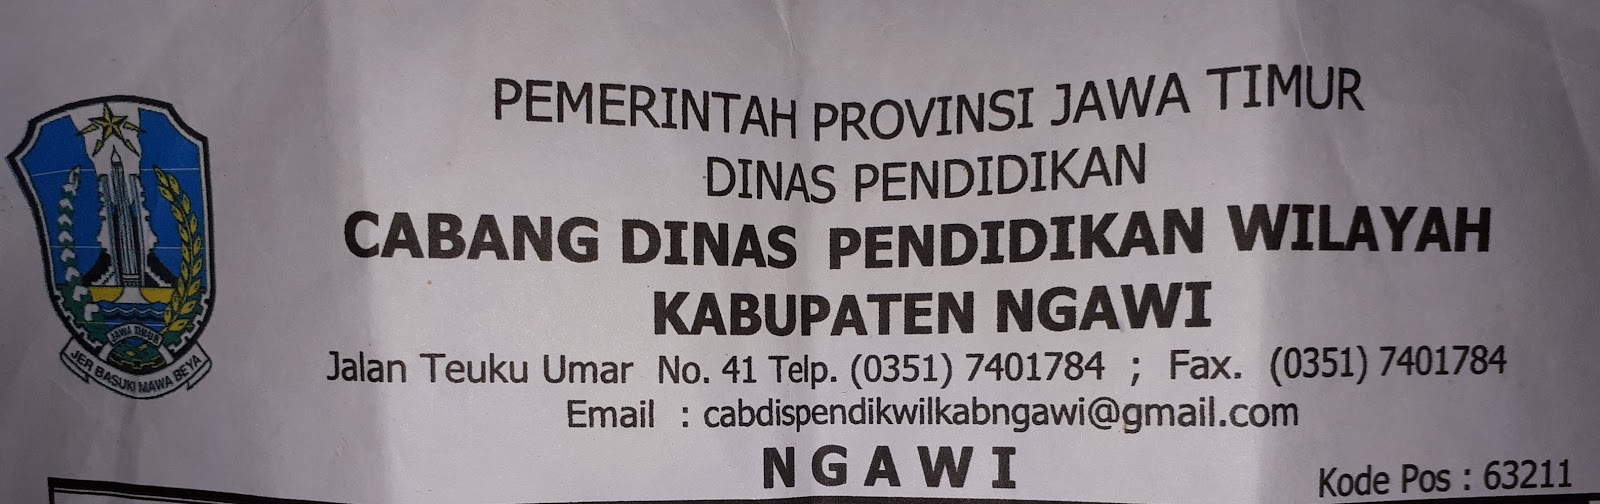 Alamat Cabang Dinas Pendidikan Wilayah Kabupaten Ngawi